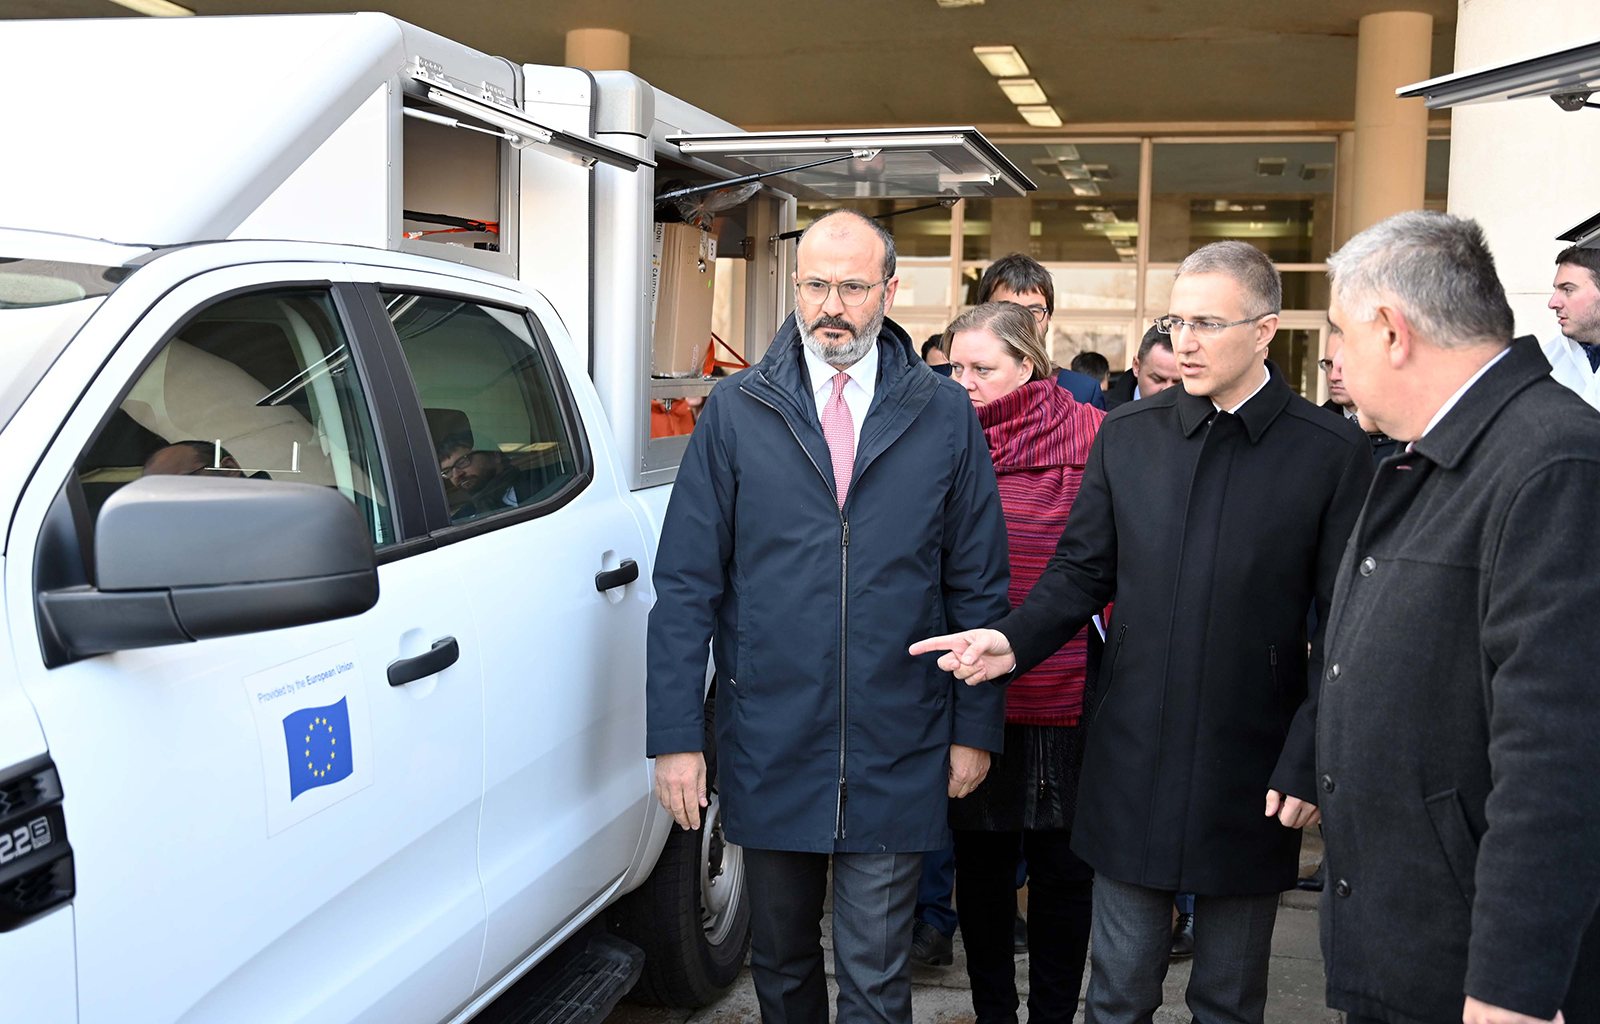  ЕУ донирала УКП МУП-а 18 возила и опрему укупне вредности милион евра